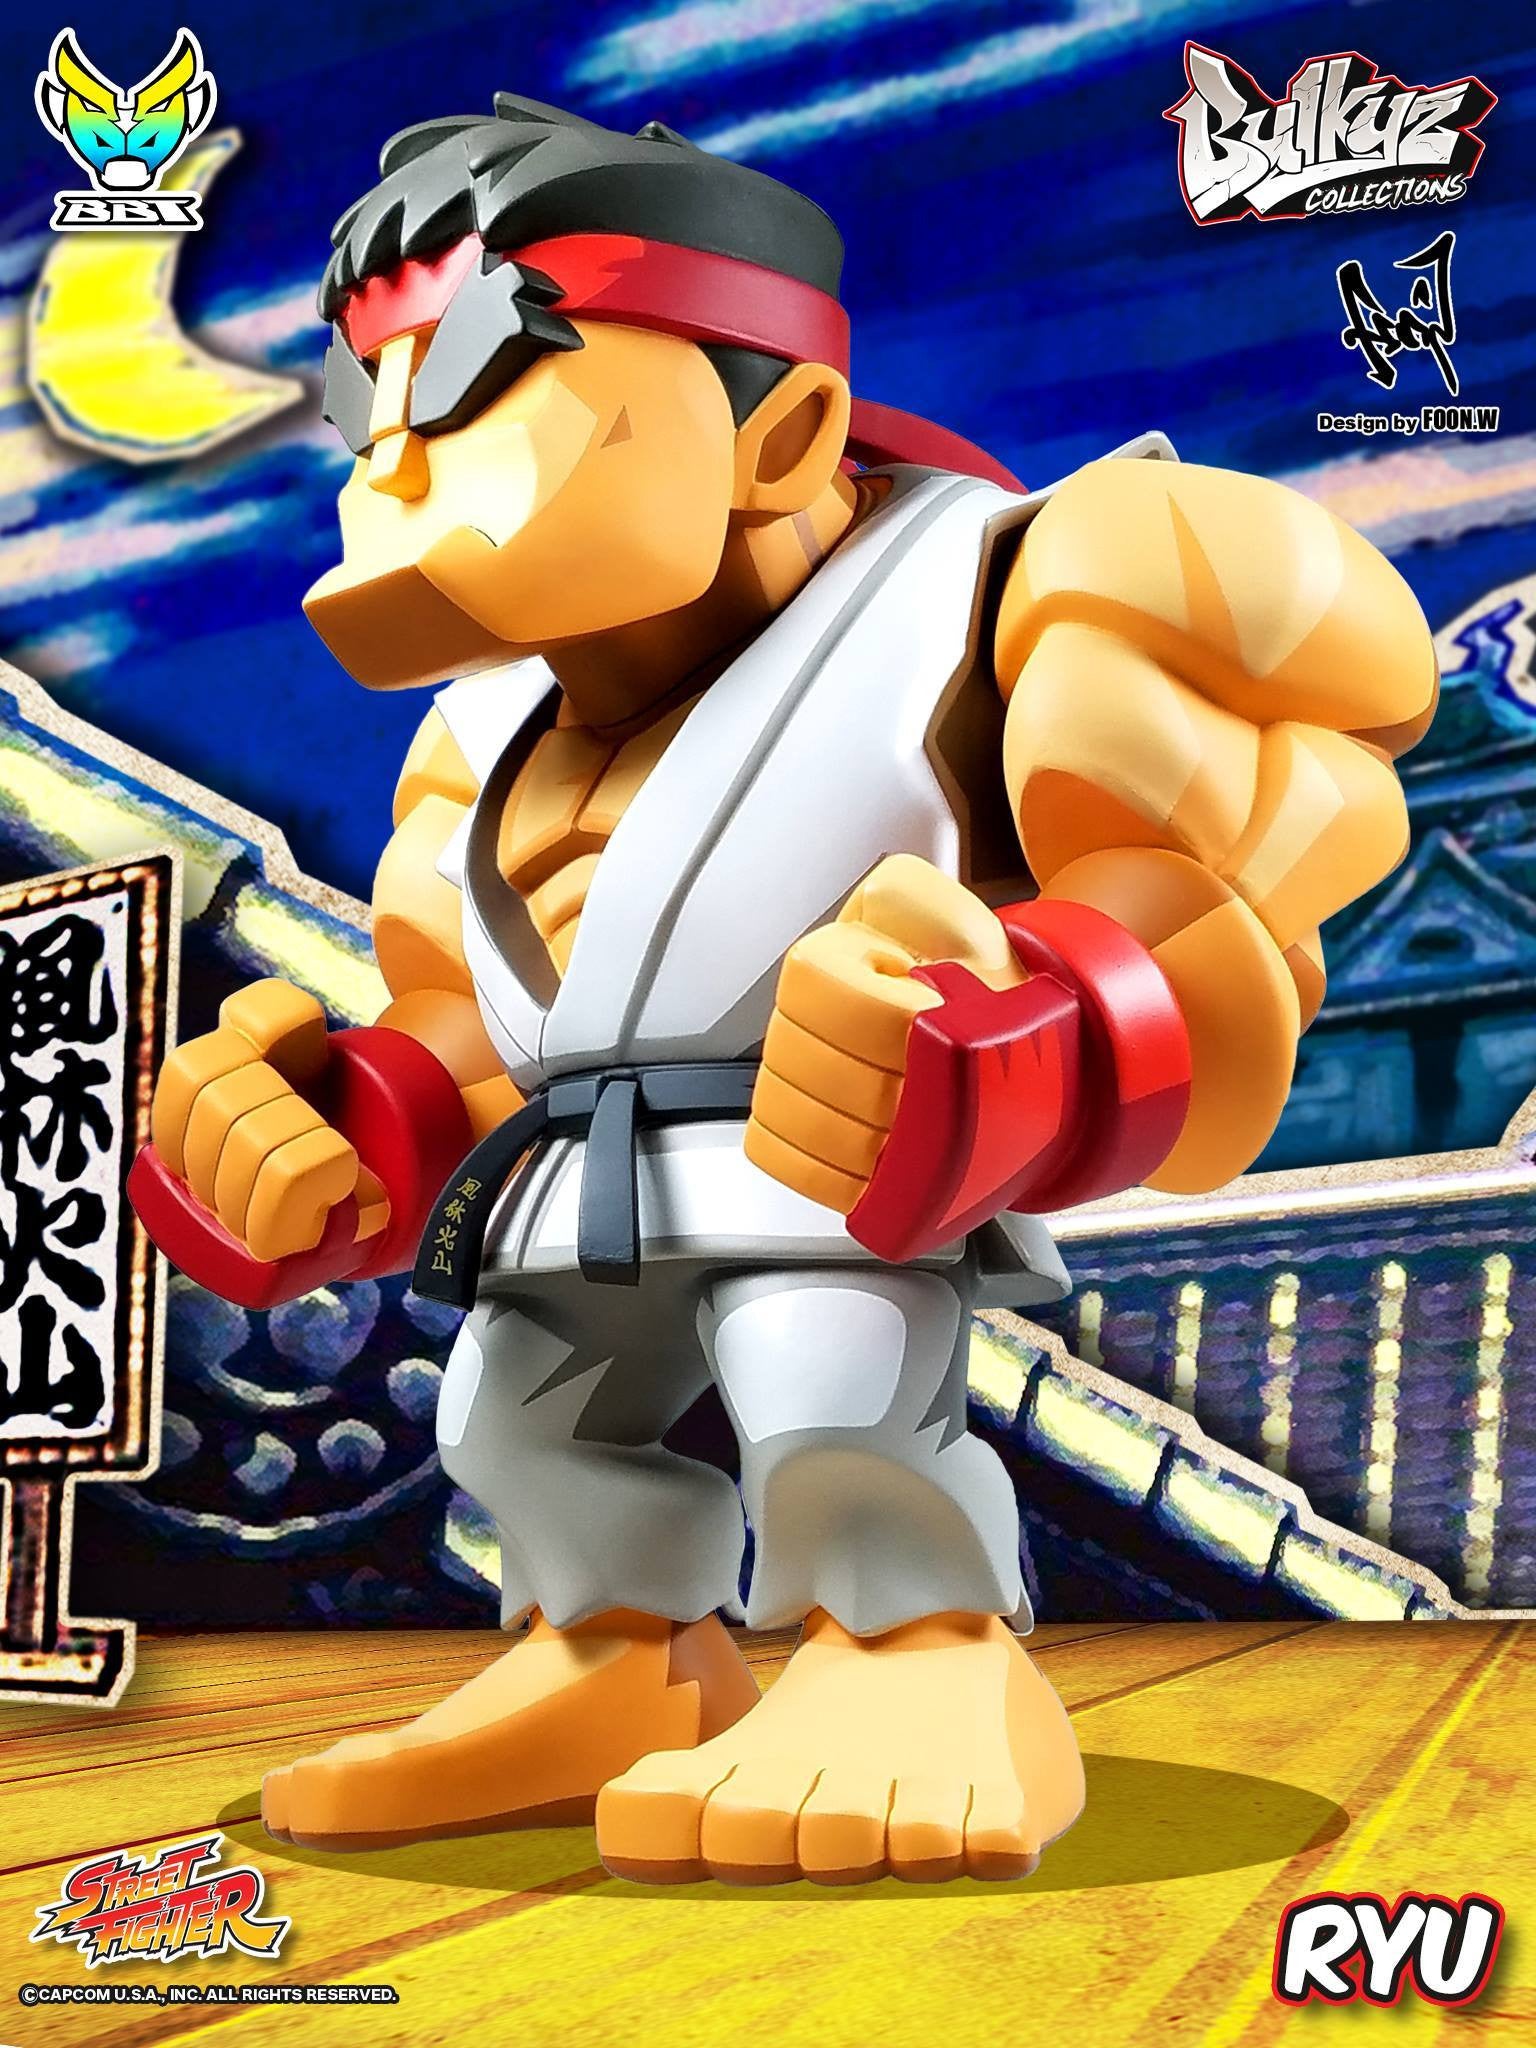 Bigboystoys - Bulkyz Collection - Street Fighter - Ryu - Marvelous Toys